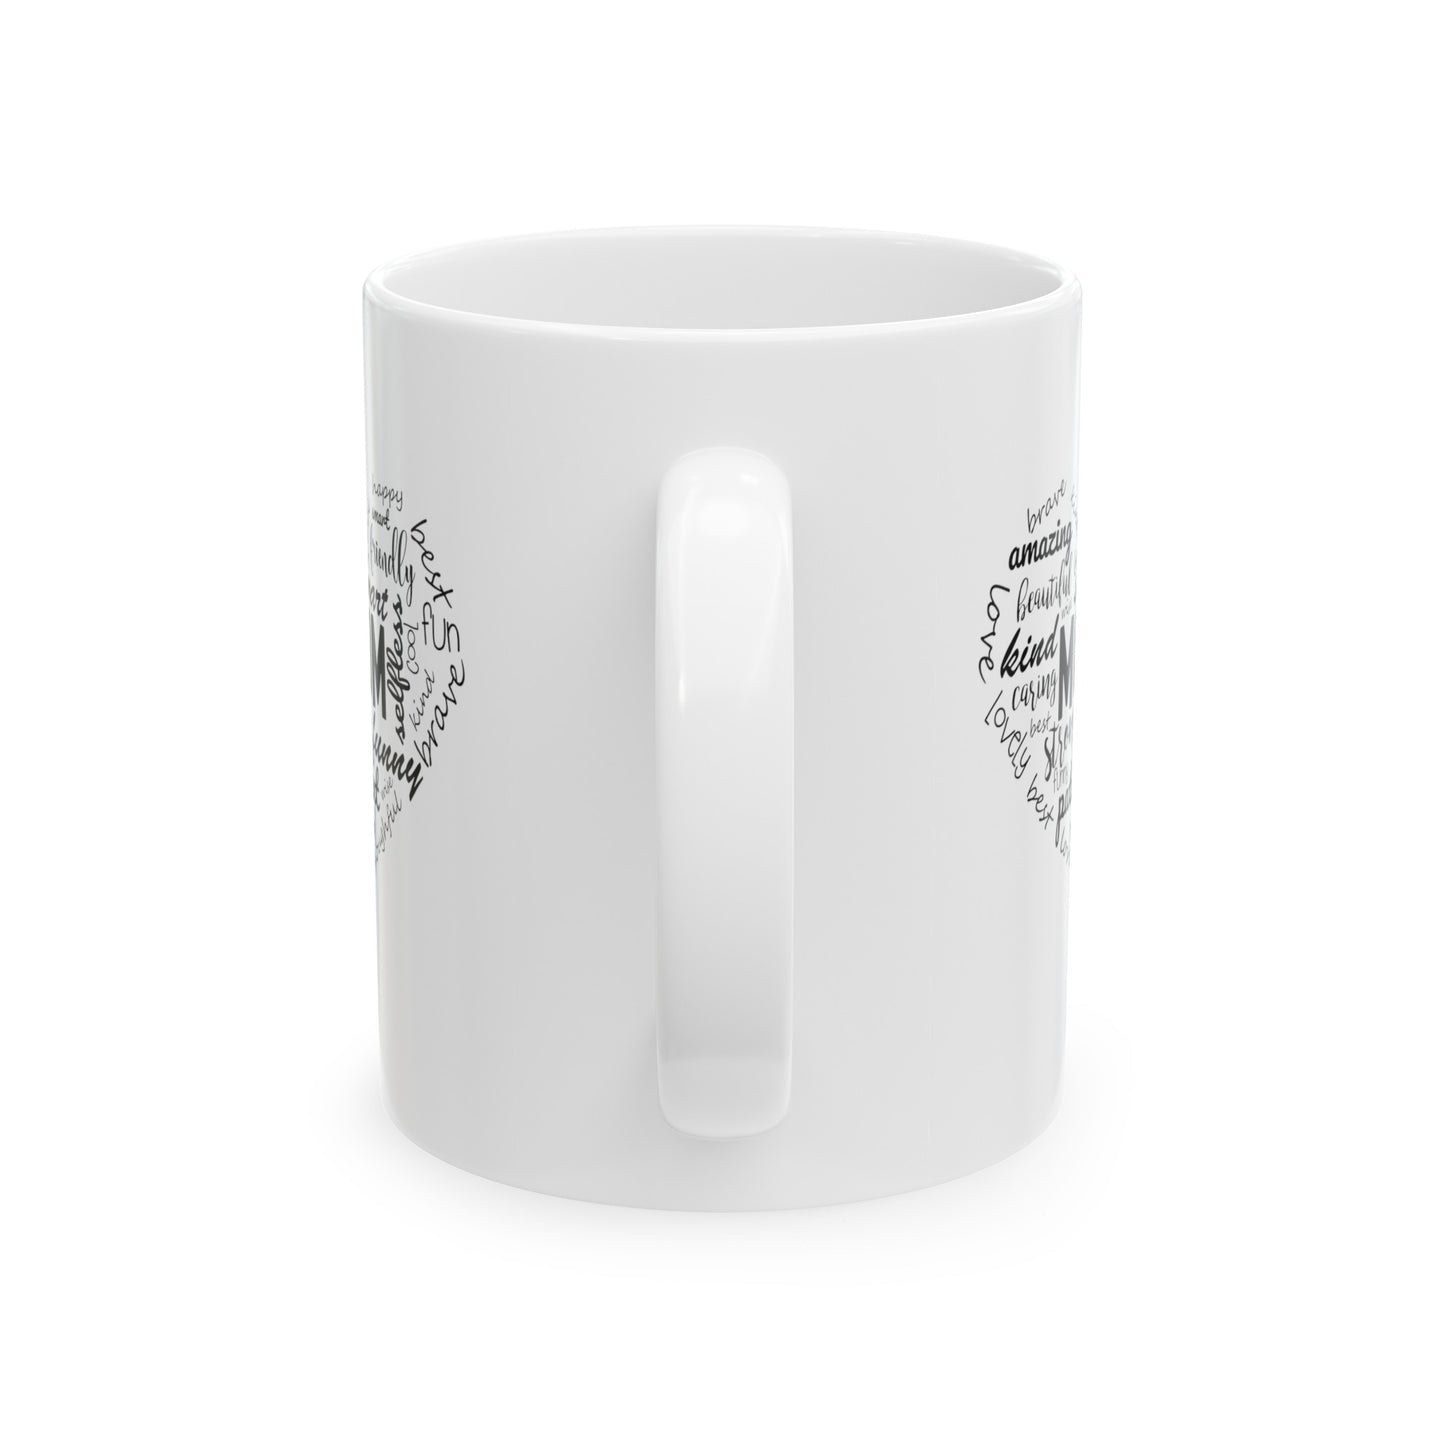 MOM - Ceramic Mug